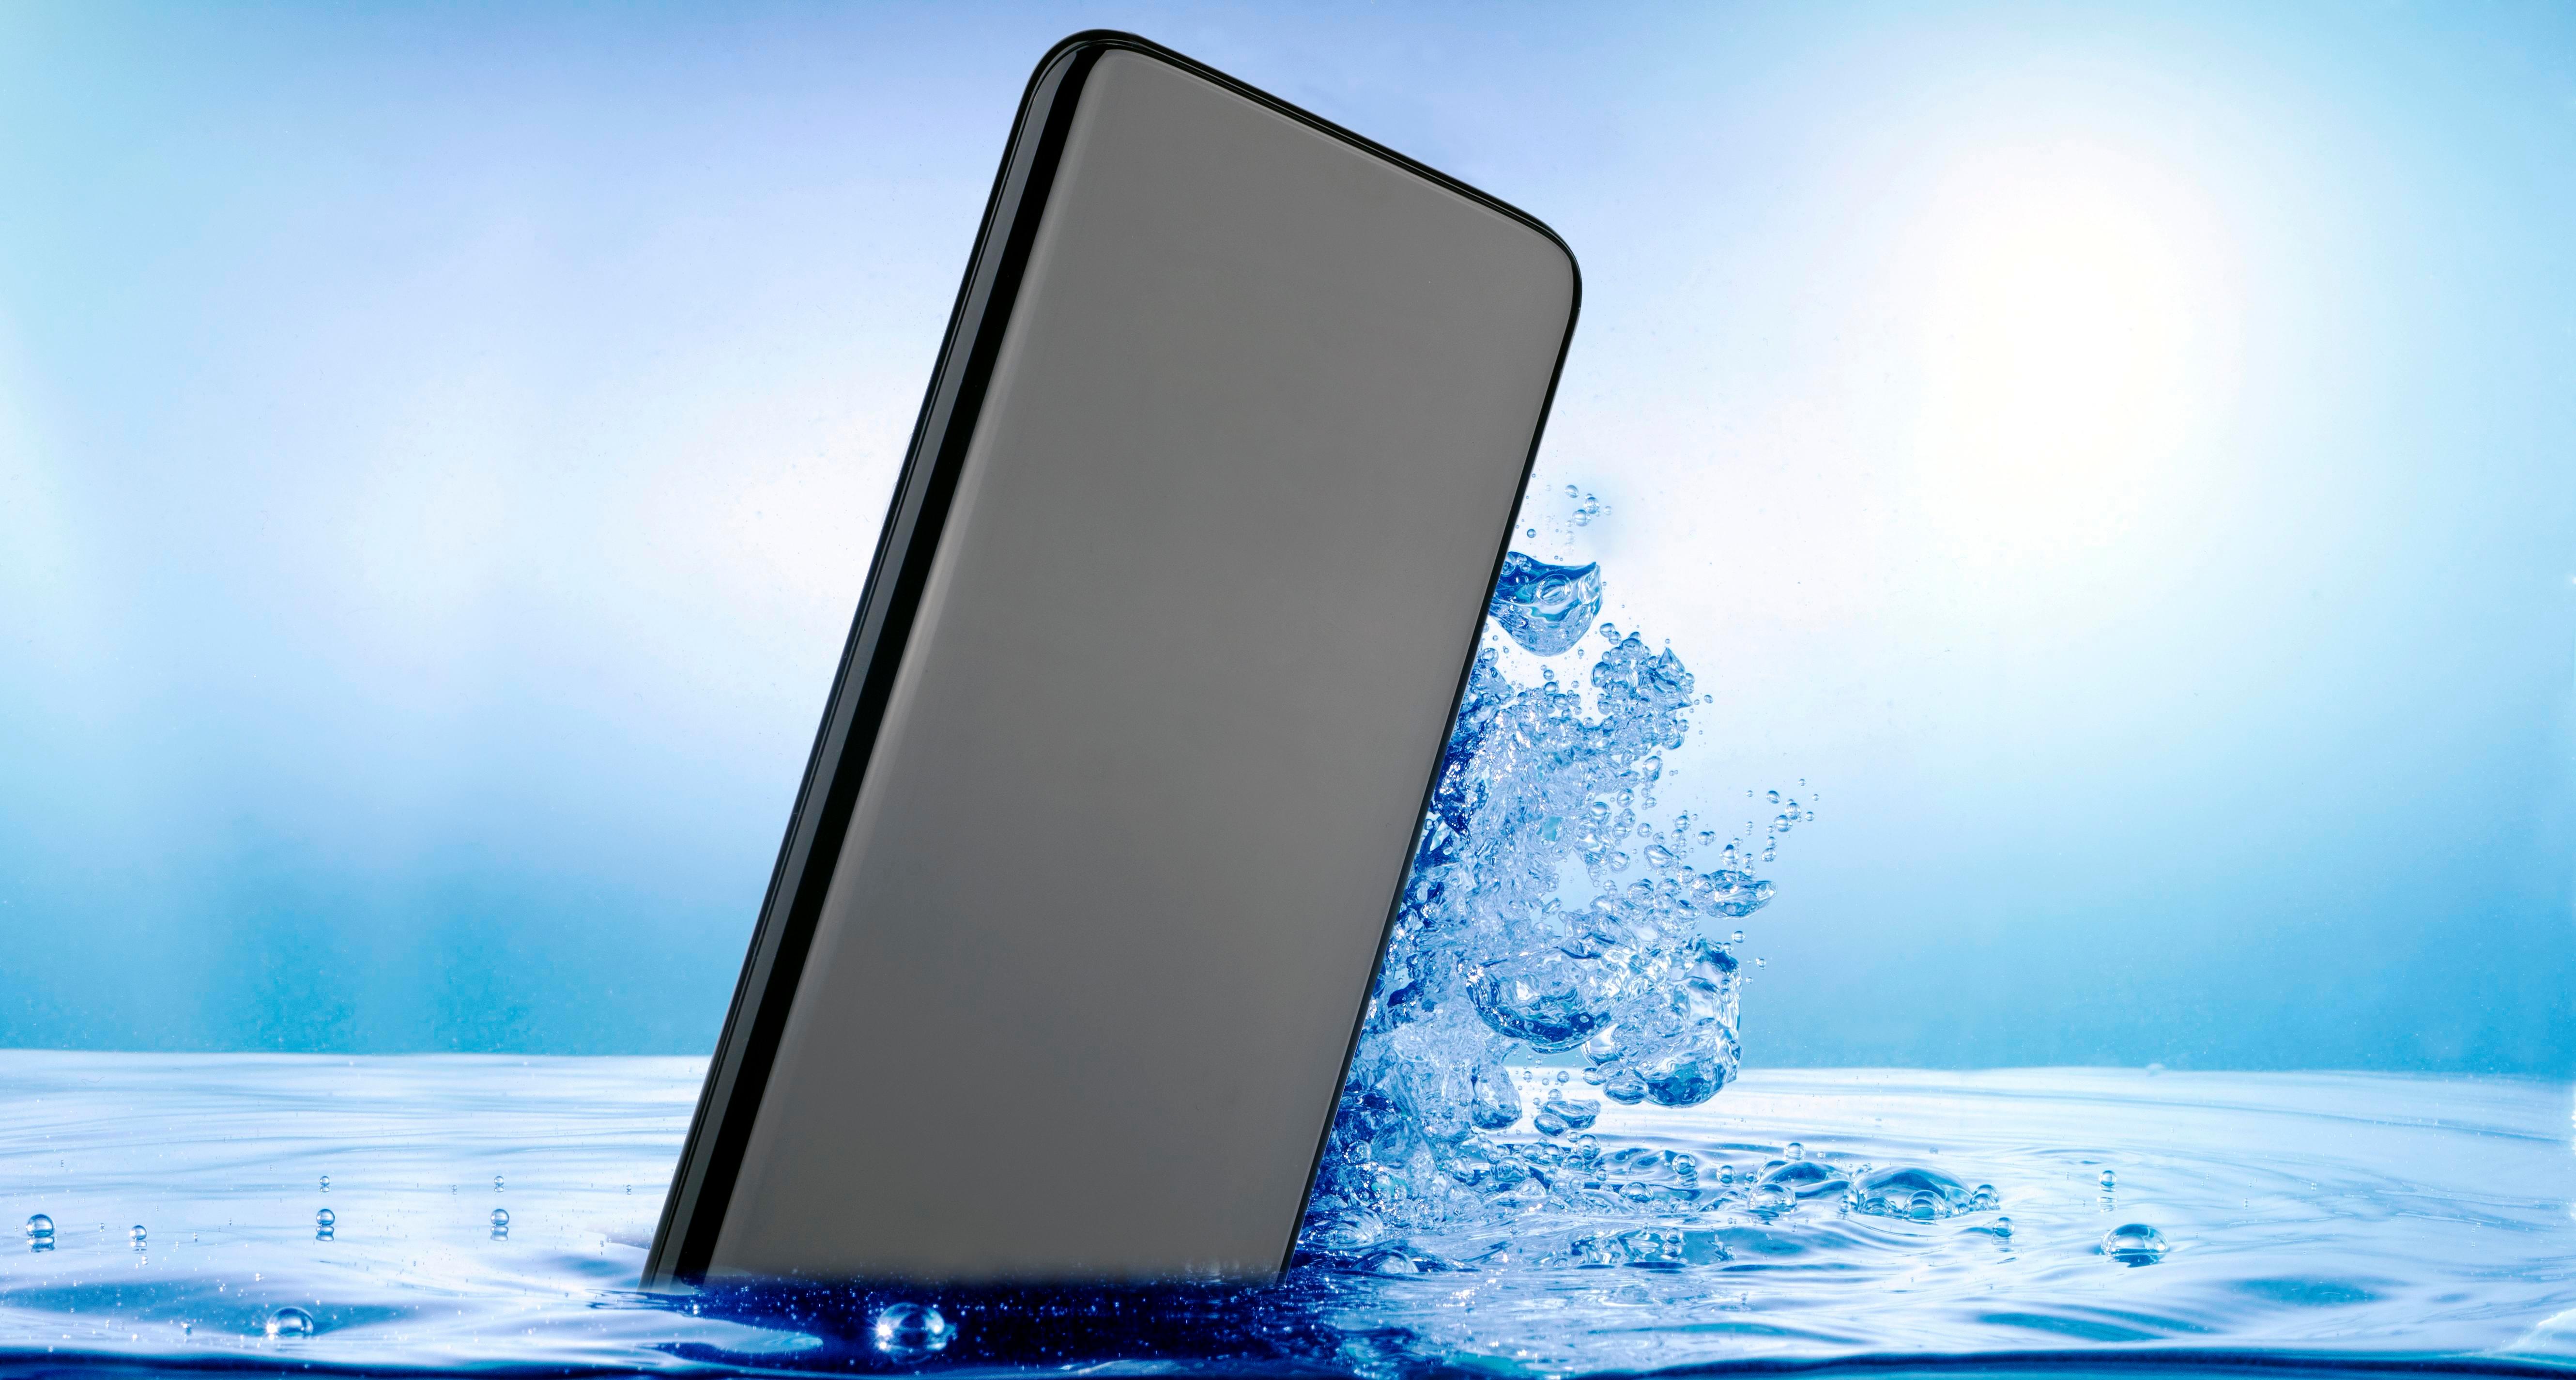  AppleiPhone 7 dan lebih tahan air dalam 1 meter air selama 30 menit